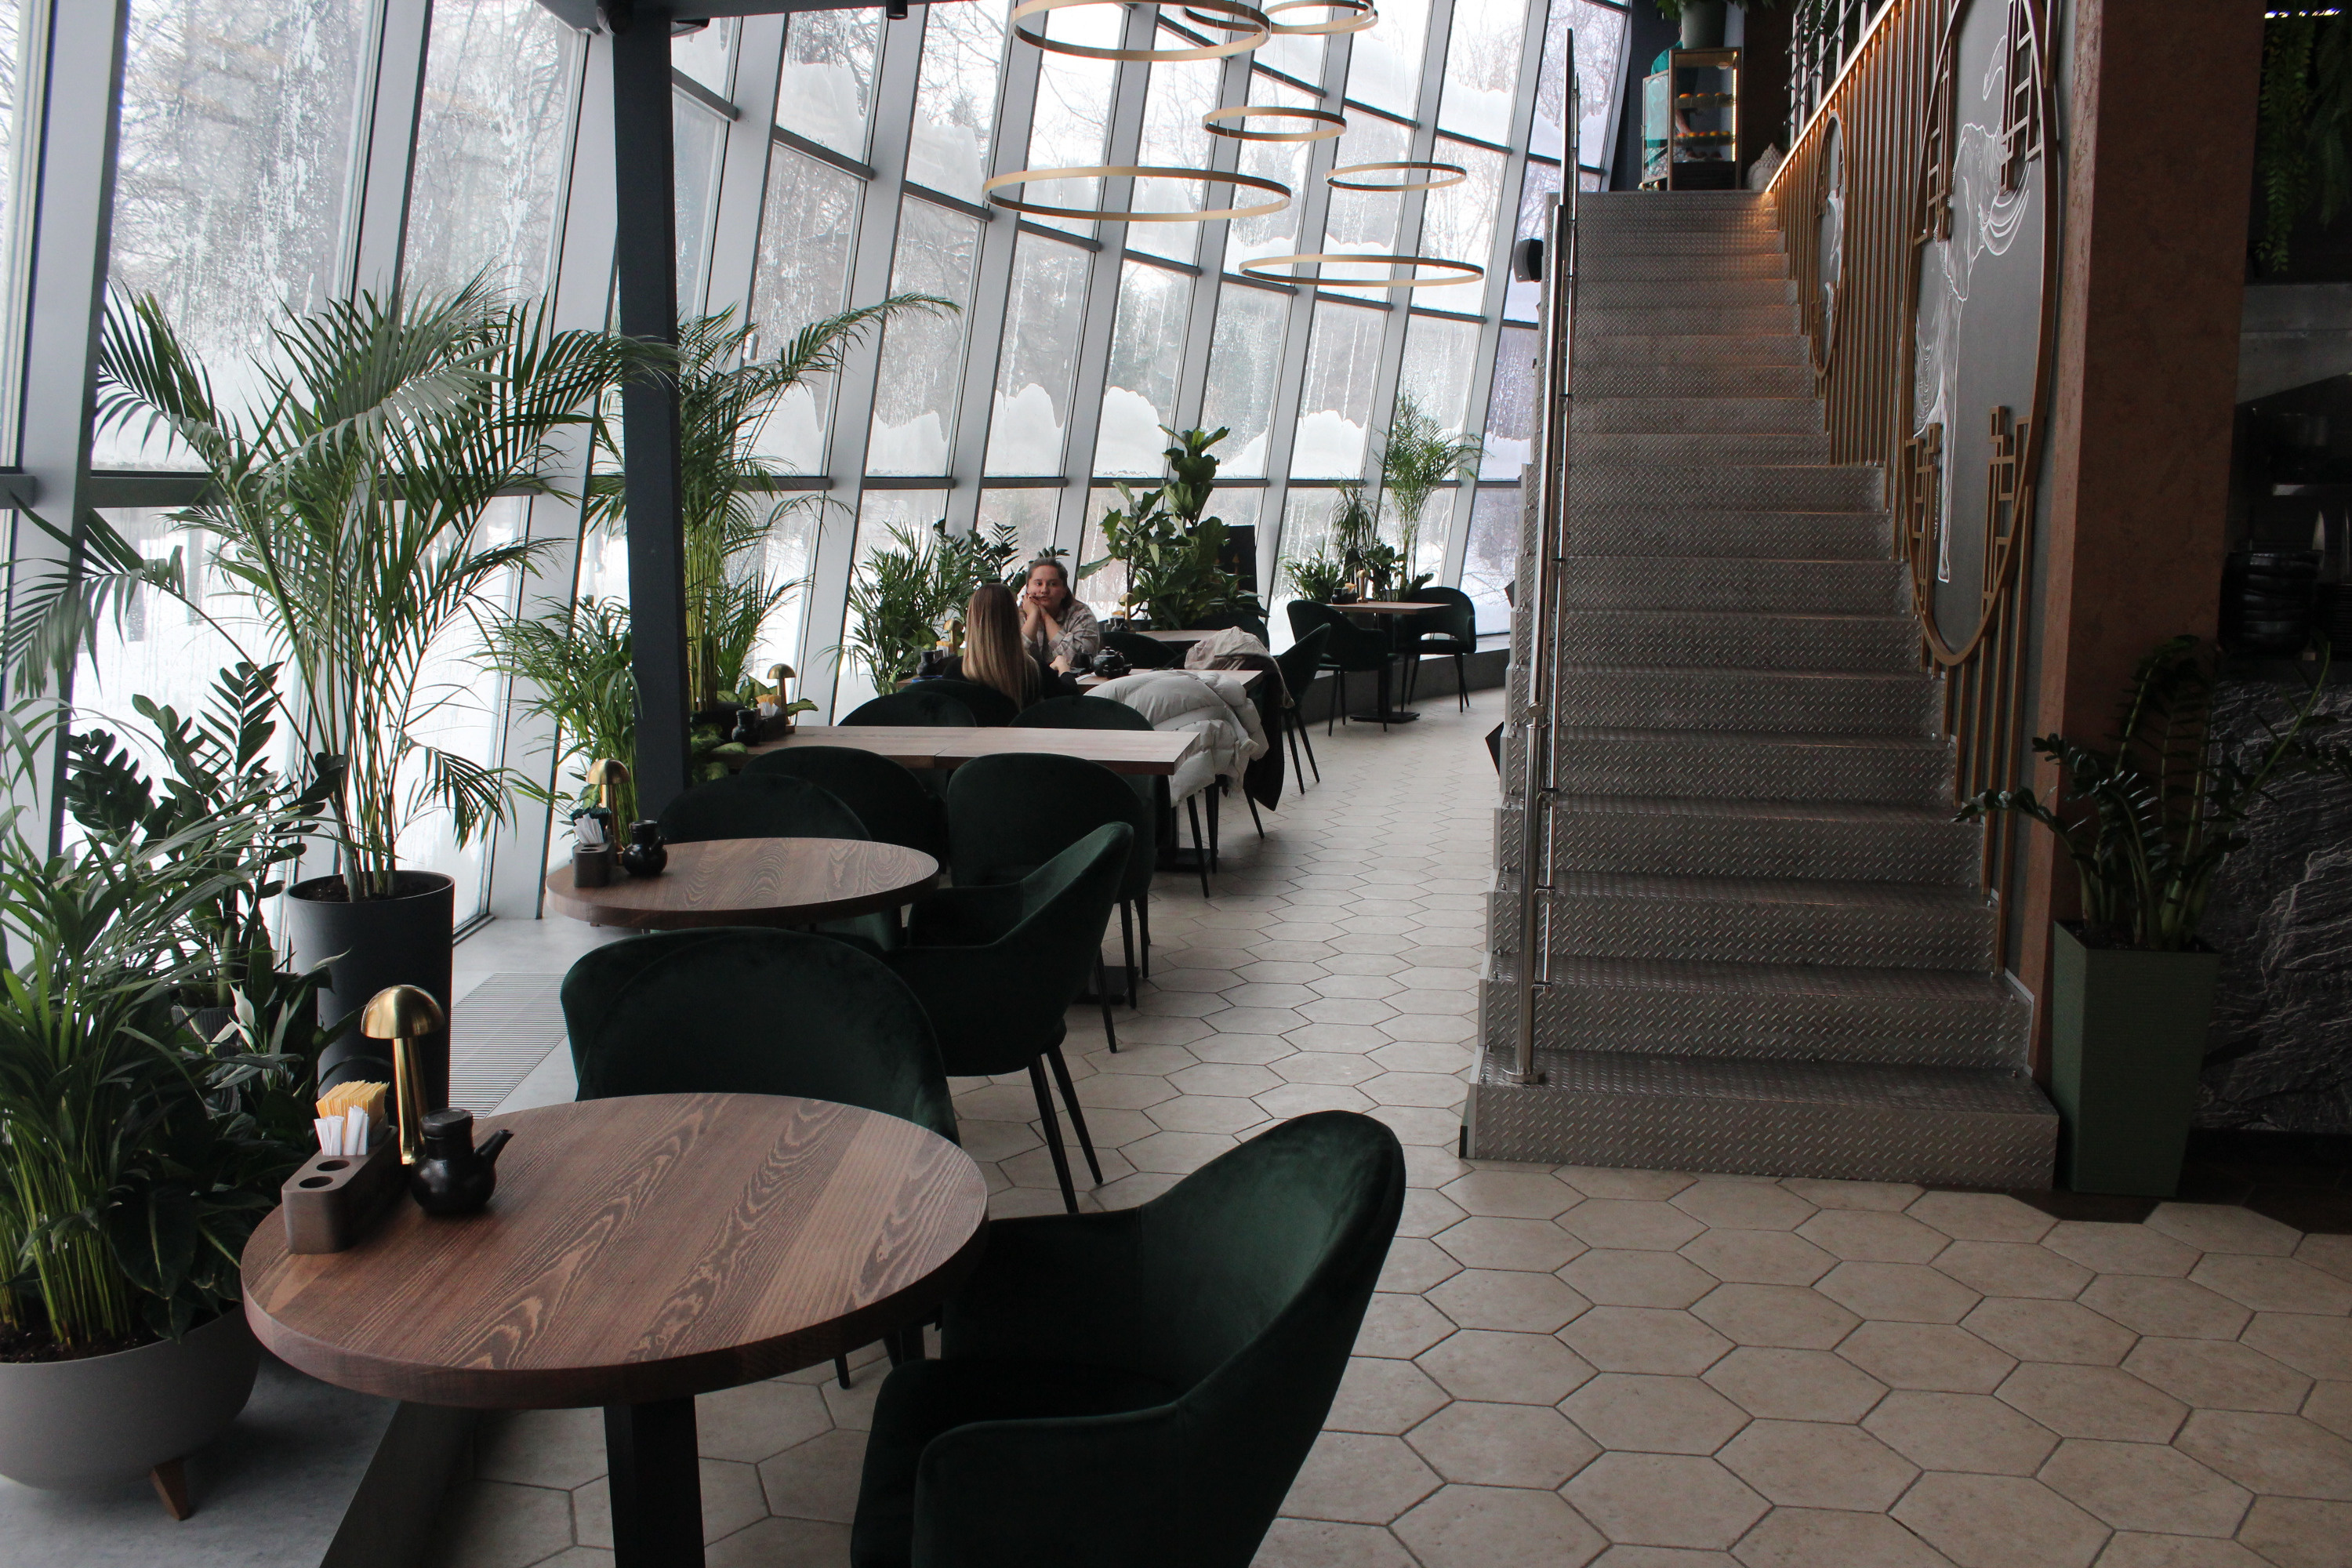 Новосибирск пока побеждает по количеству номинантов. На фото — кафе Sabai, получившее в этом году Народную премию НГС как лучший ресторан года, теперь попало в лонг-лист премии WHERETOEAT